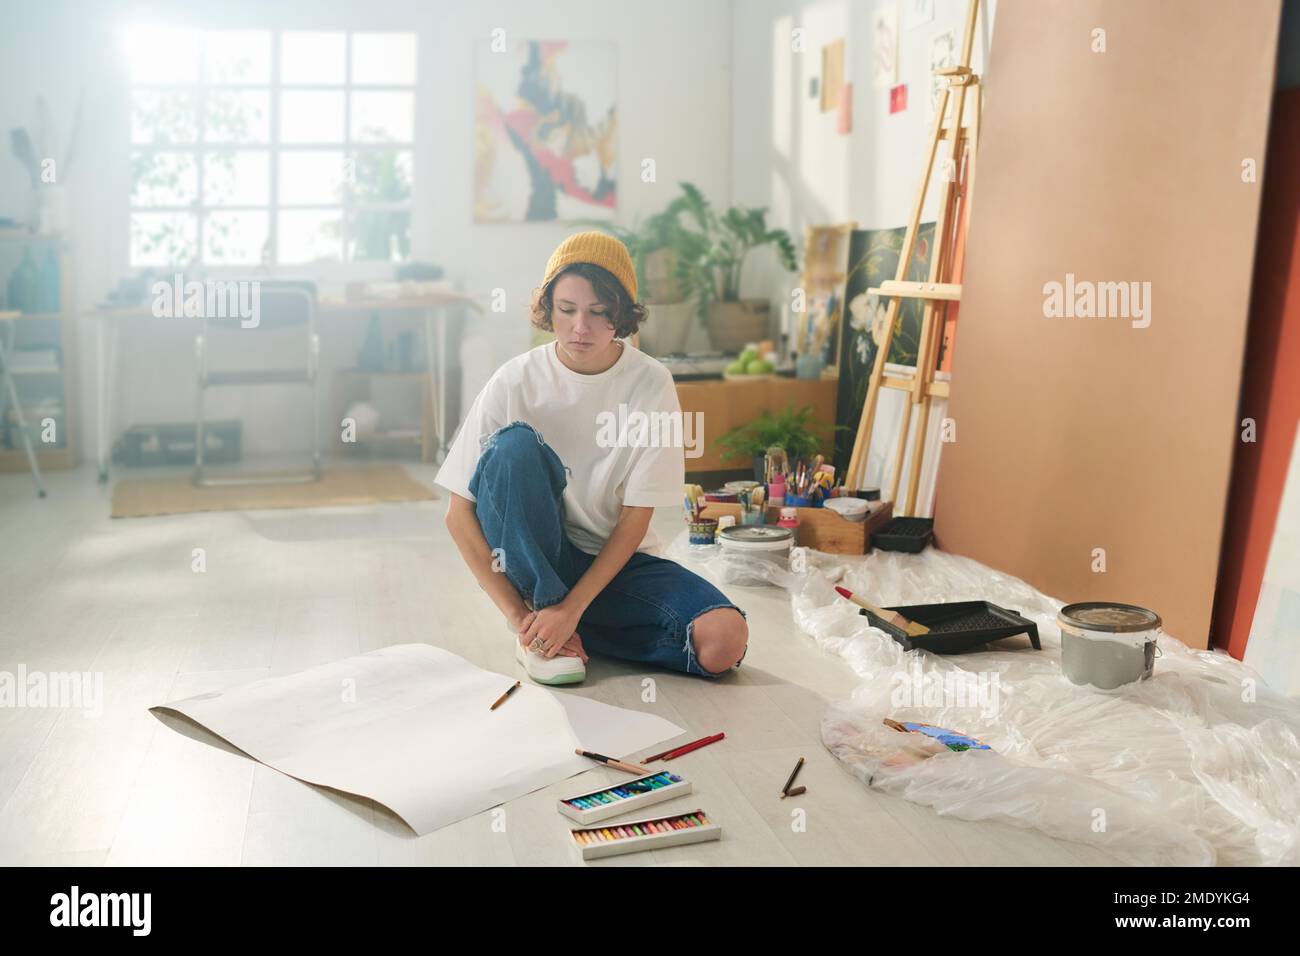 Junger Künstler in Freizeitkleidung sitzt auf dem Boden des Heimstudios und sieht sich leeres Papier an, während er sich für die Gestaltung neuer Kunstwerke inspirieren lässt Stockfoto